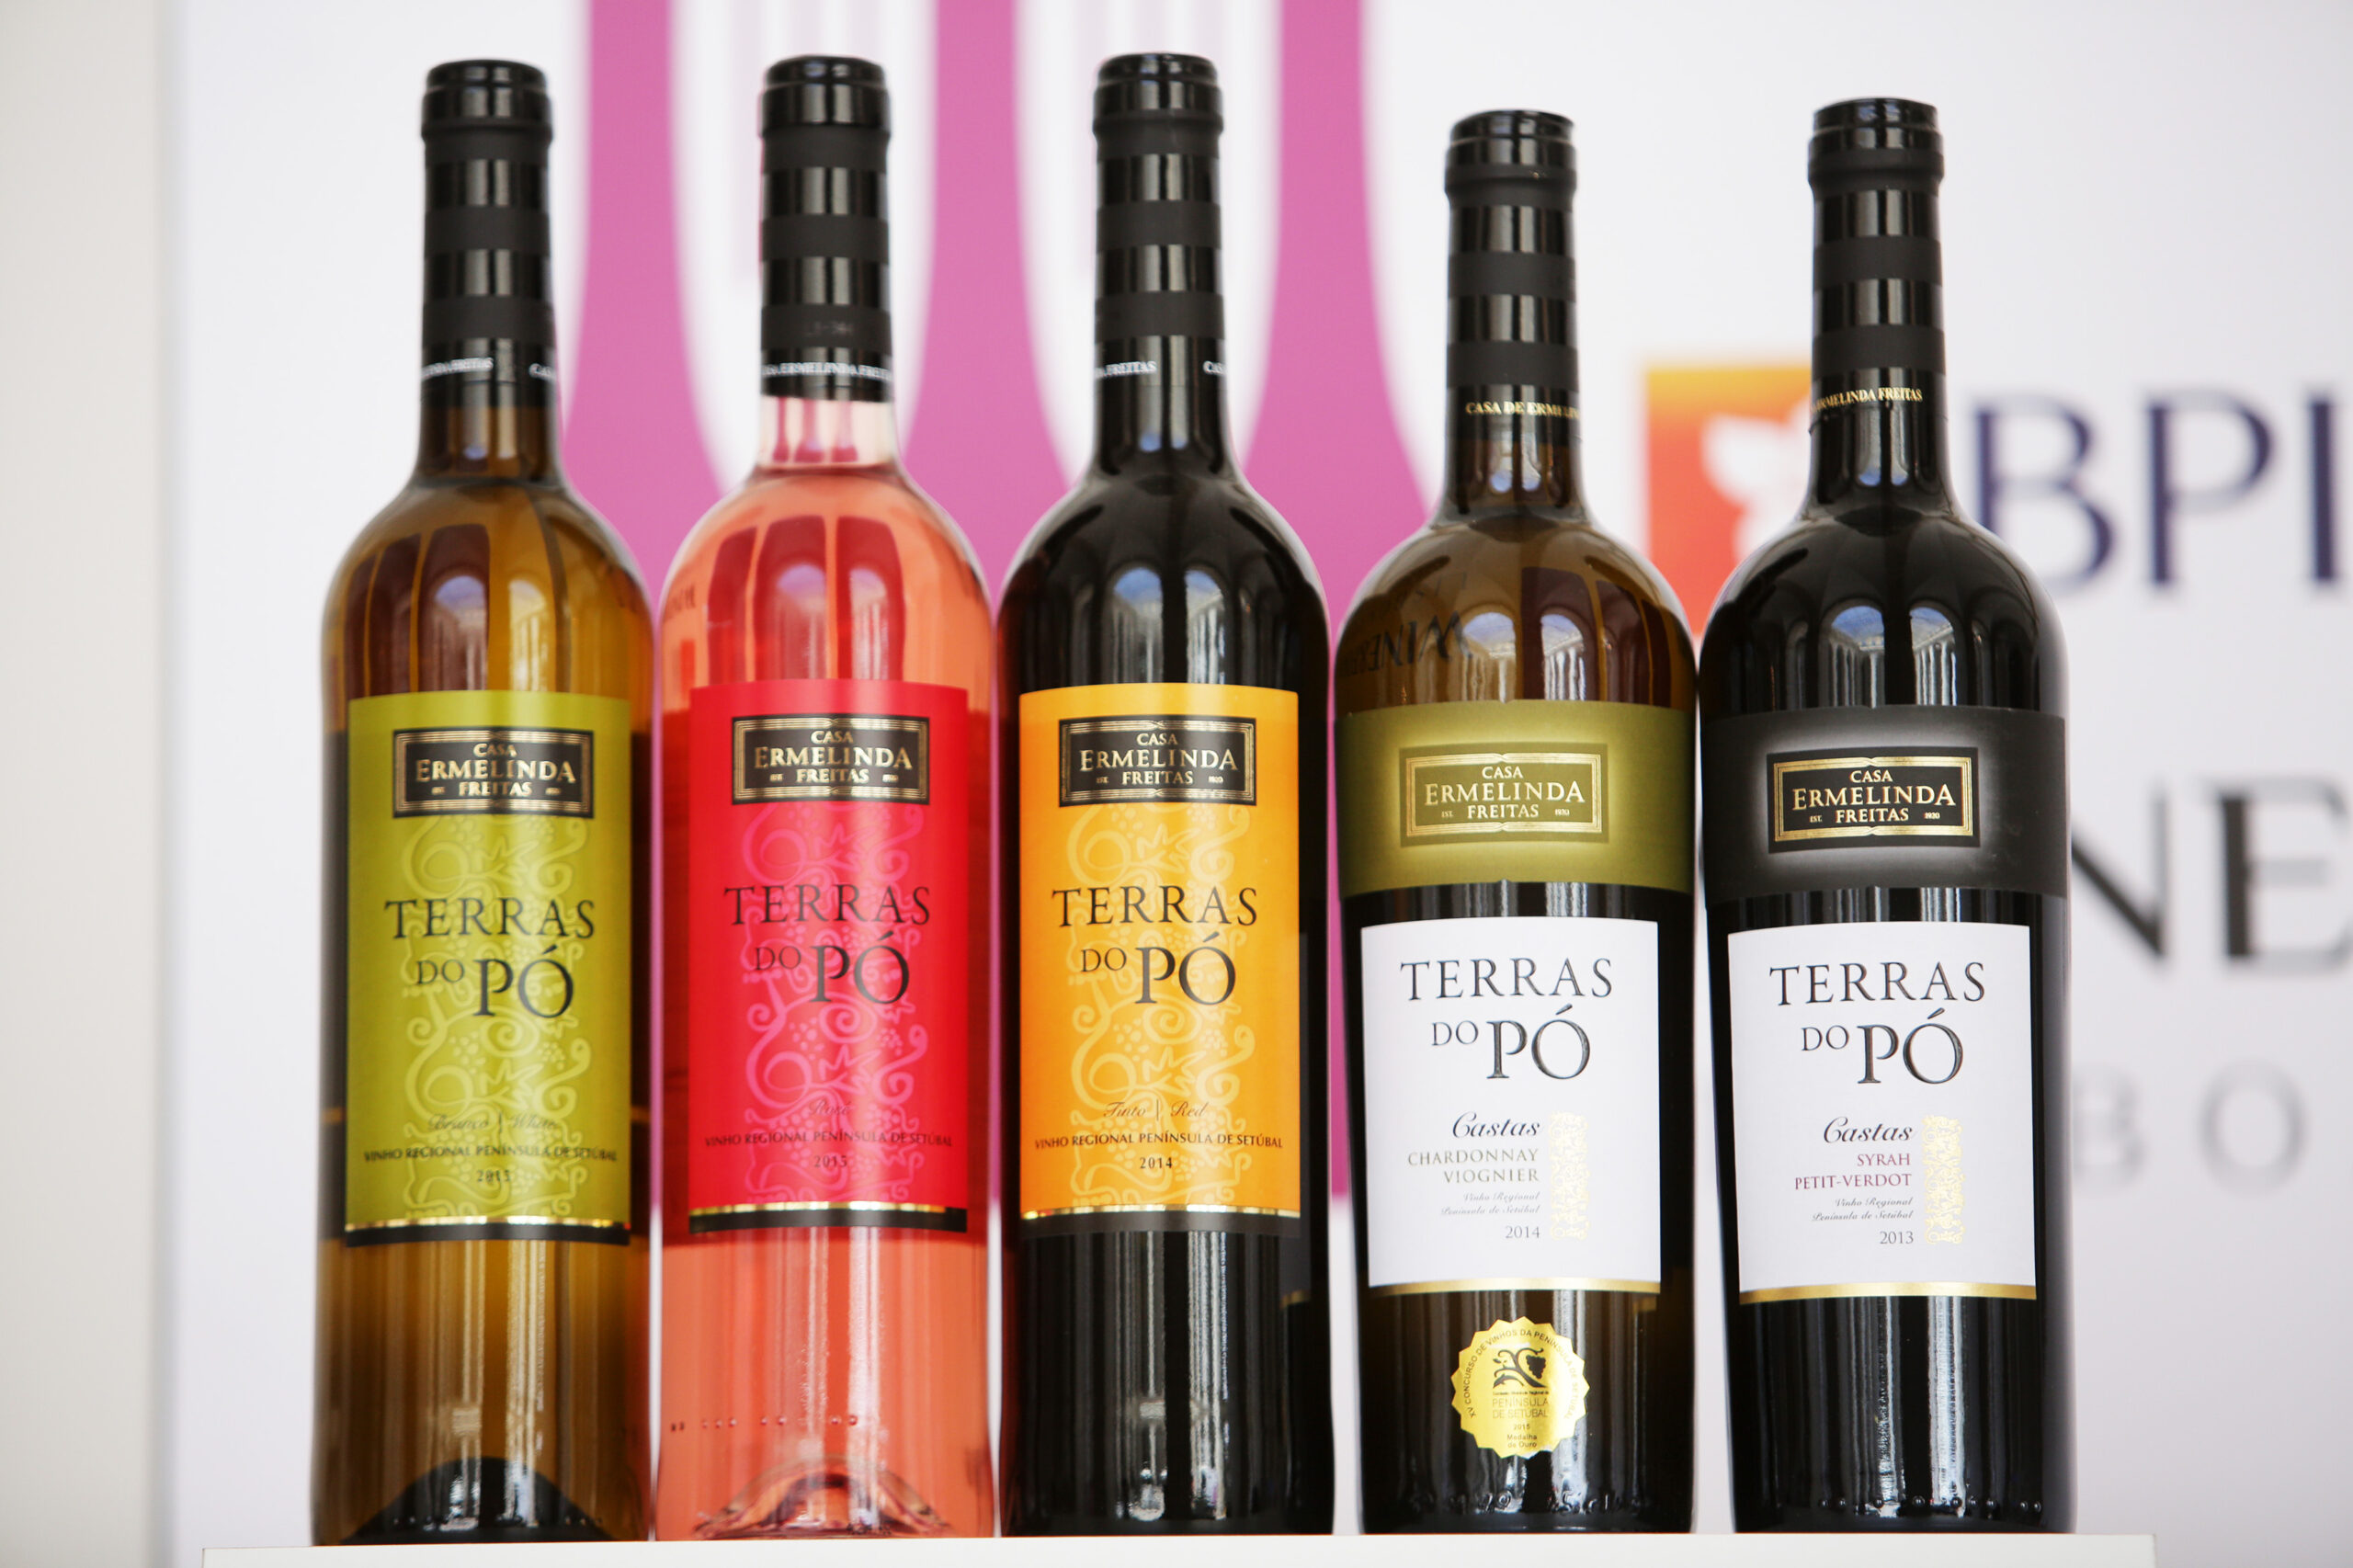 Garrafas de vinho Casa da Ermelinda Freitas Terras do Pó de 2013 a 2105 em exposição no evento gastronómico. garrafa de vinho. rosé. branco. tinto. verde.